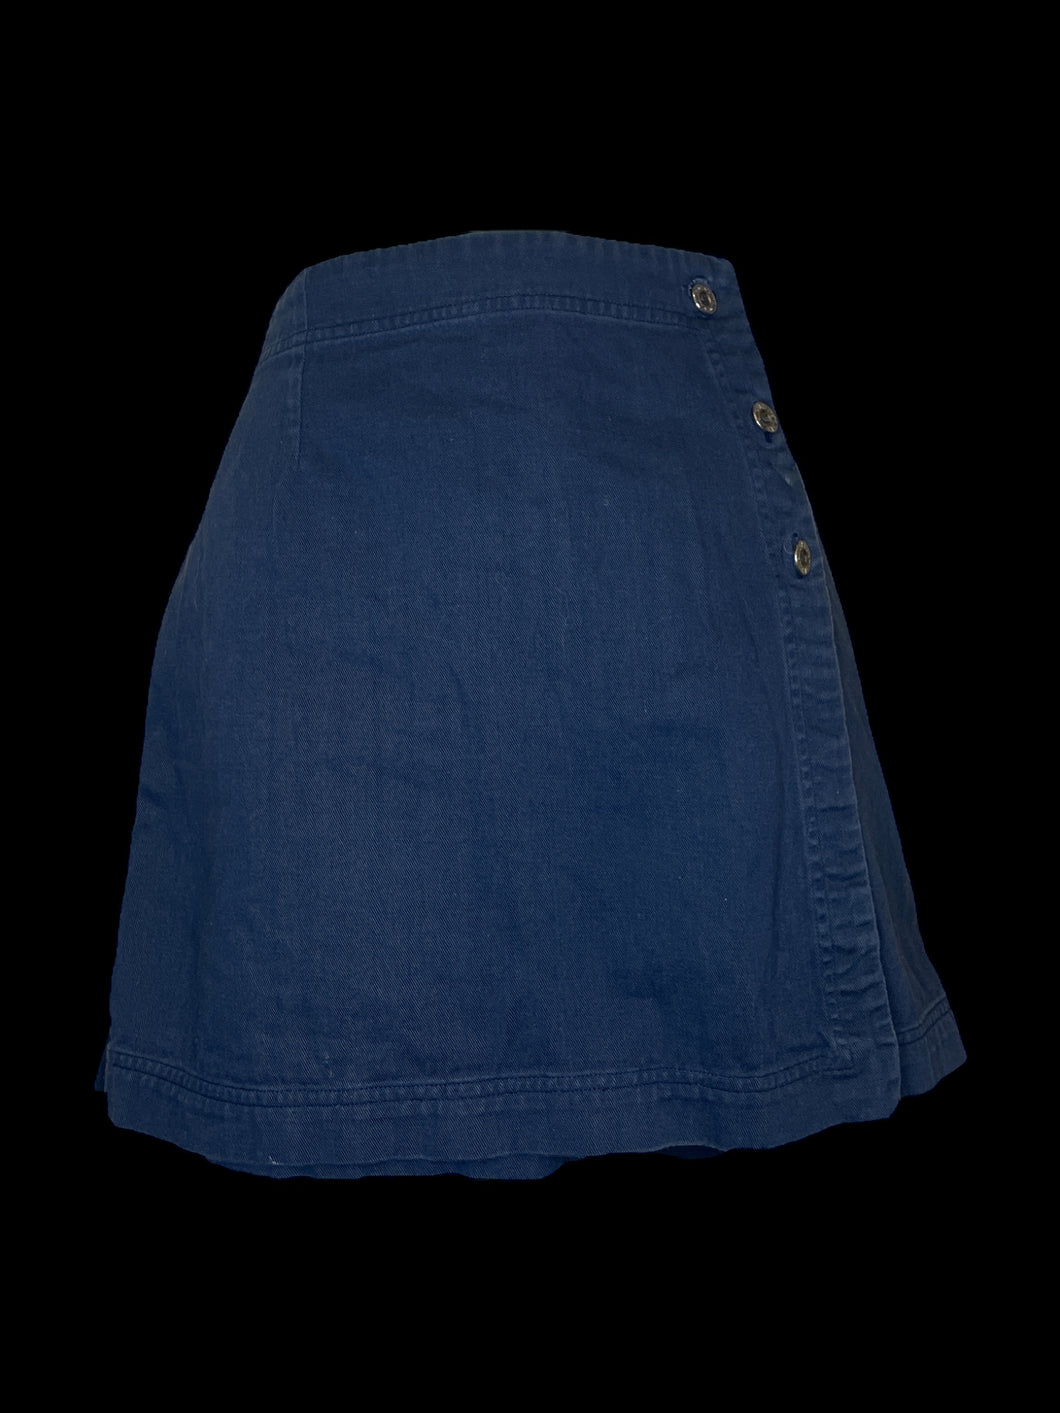 M Navy blue button Skort w/ back button pocket, 3 button closure on skirt, & button/zipper closure on shorts